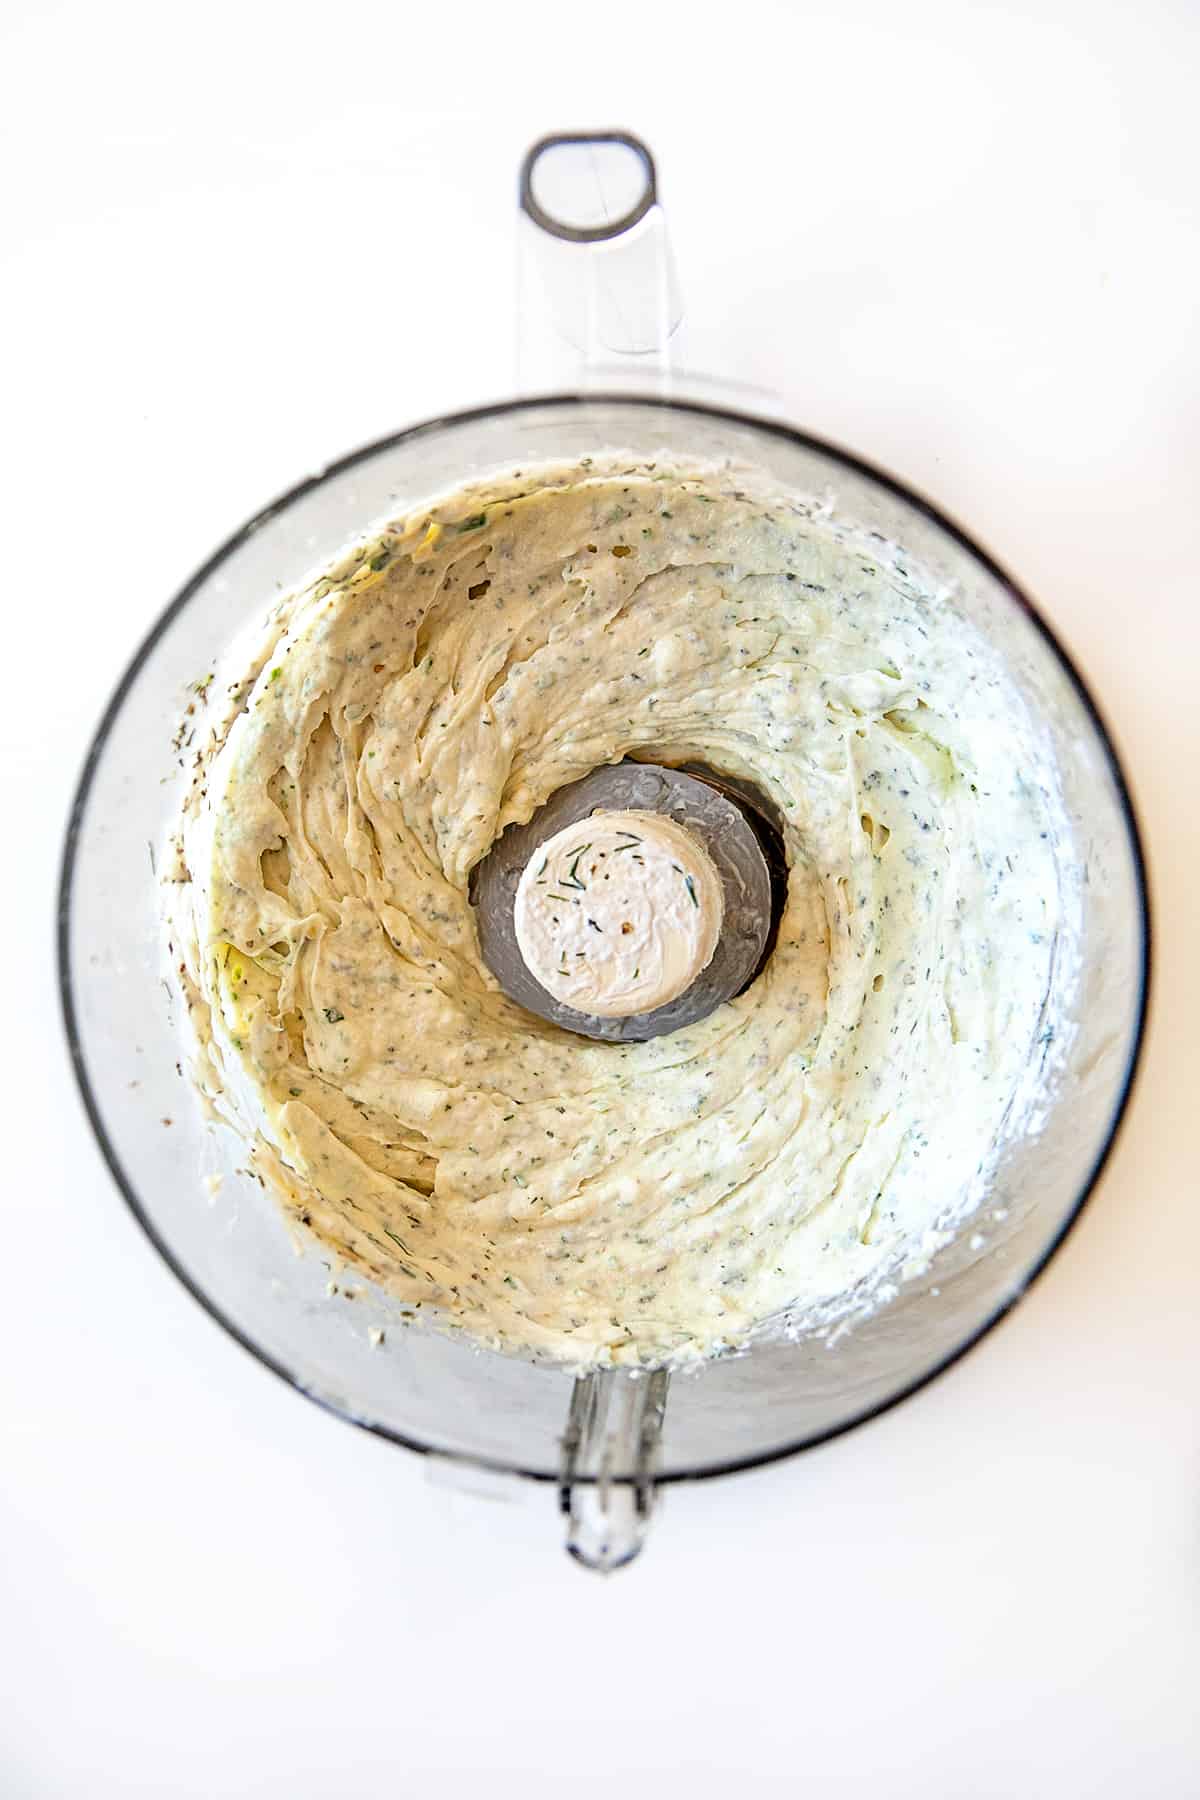 Boursin Cheese Recipe in a food processor